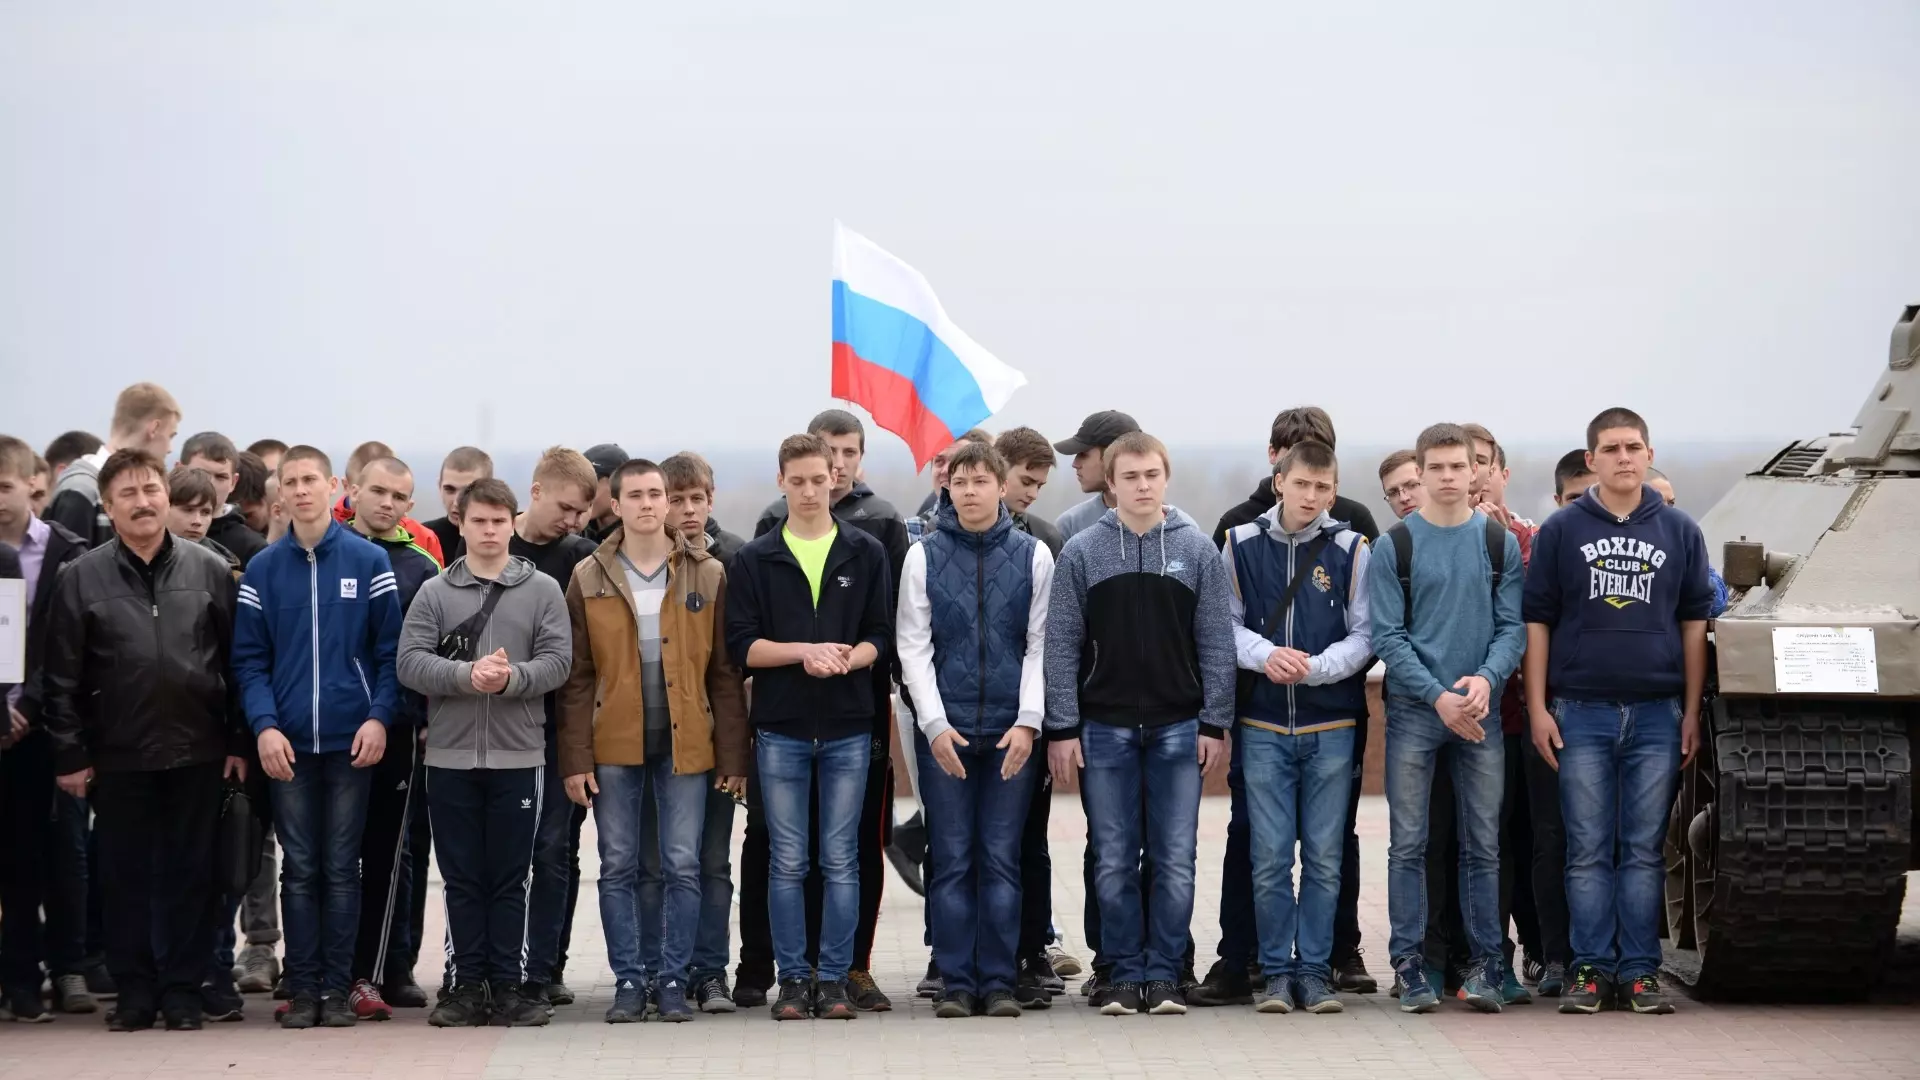 Весной ВС РФ пополнится молодежью в более широком возрастном интервале.